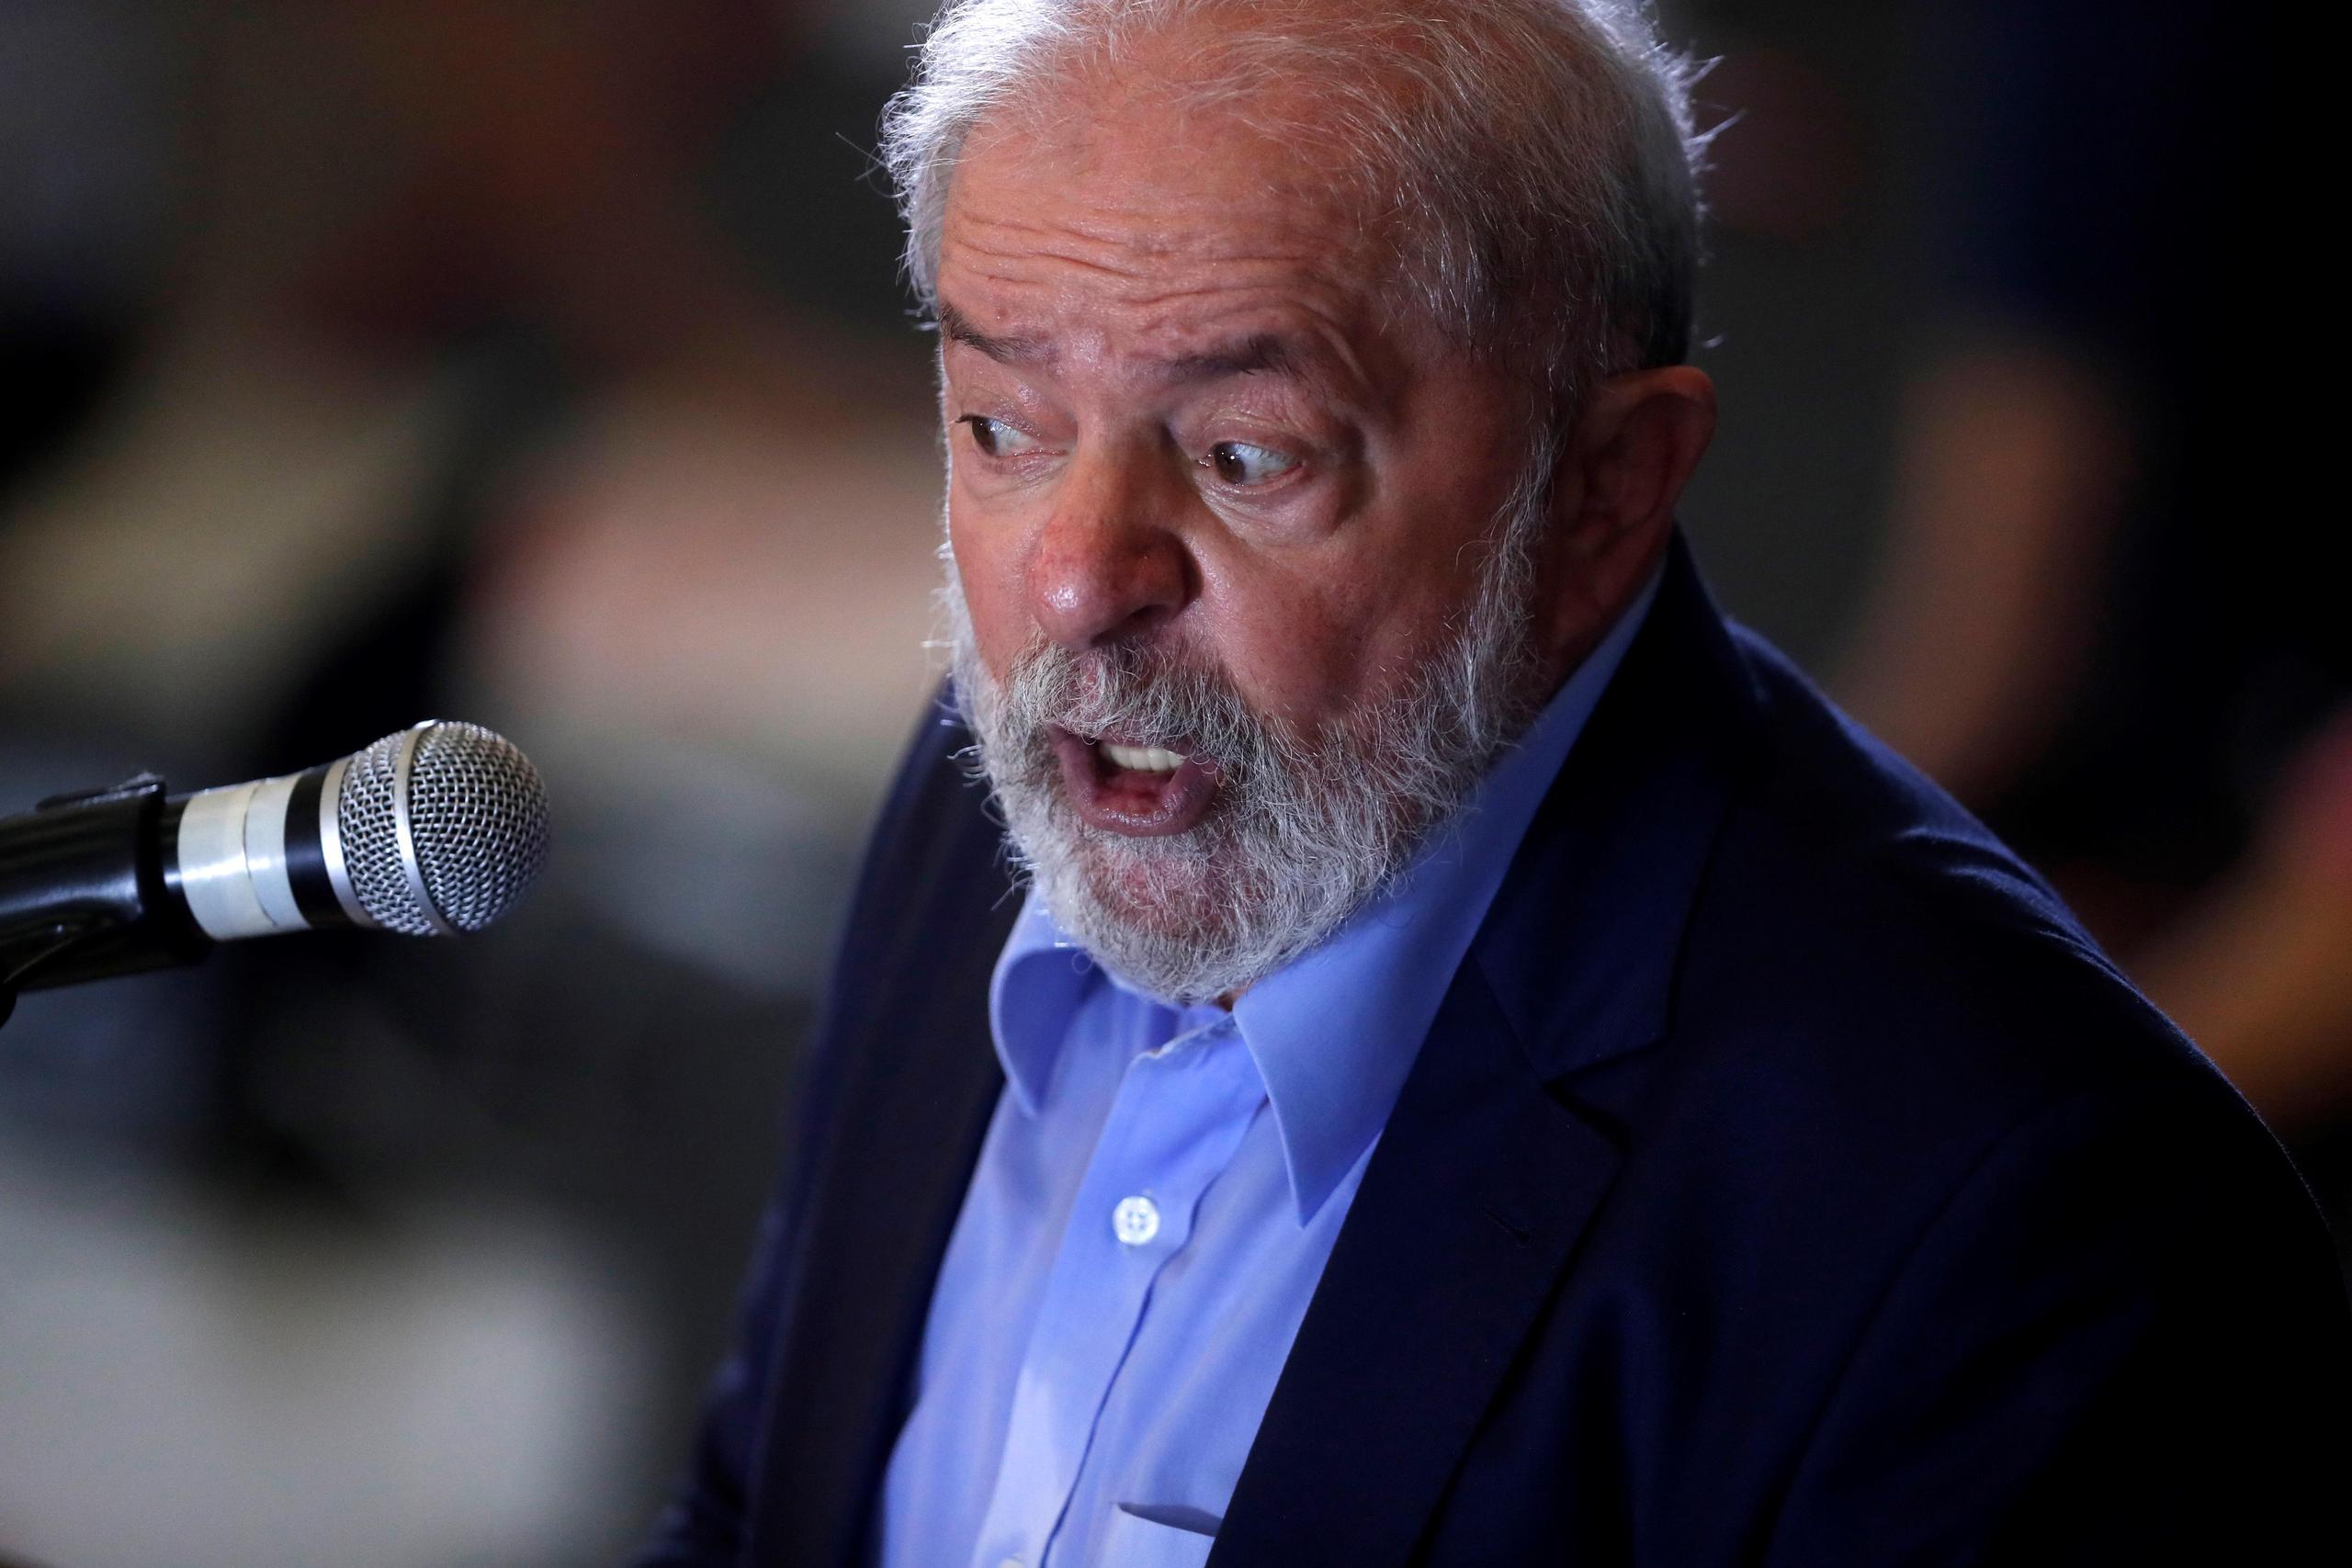 El expresidente brasileño Luiz Inácio Lula da Silva ha dicho que ha sido "víctima de la mayor mentira jurídica" en 500 años de historia de Brasil.